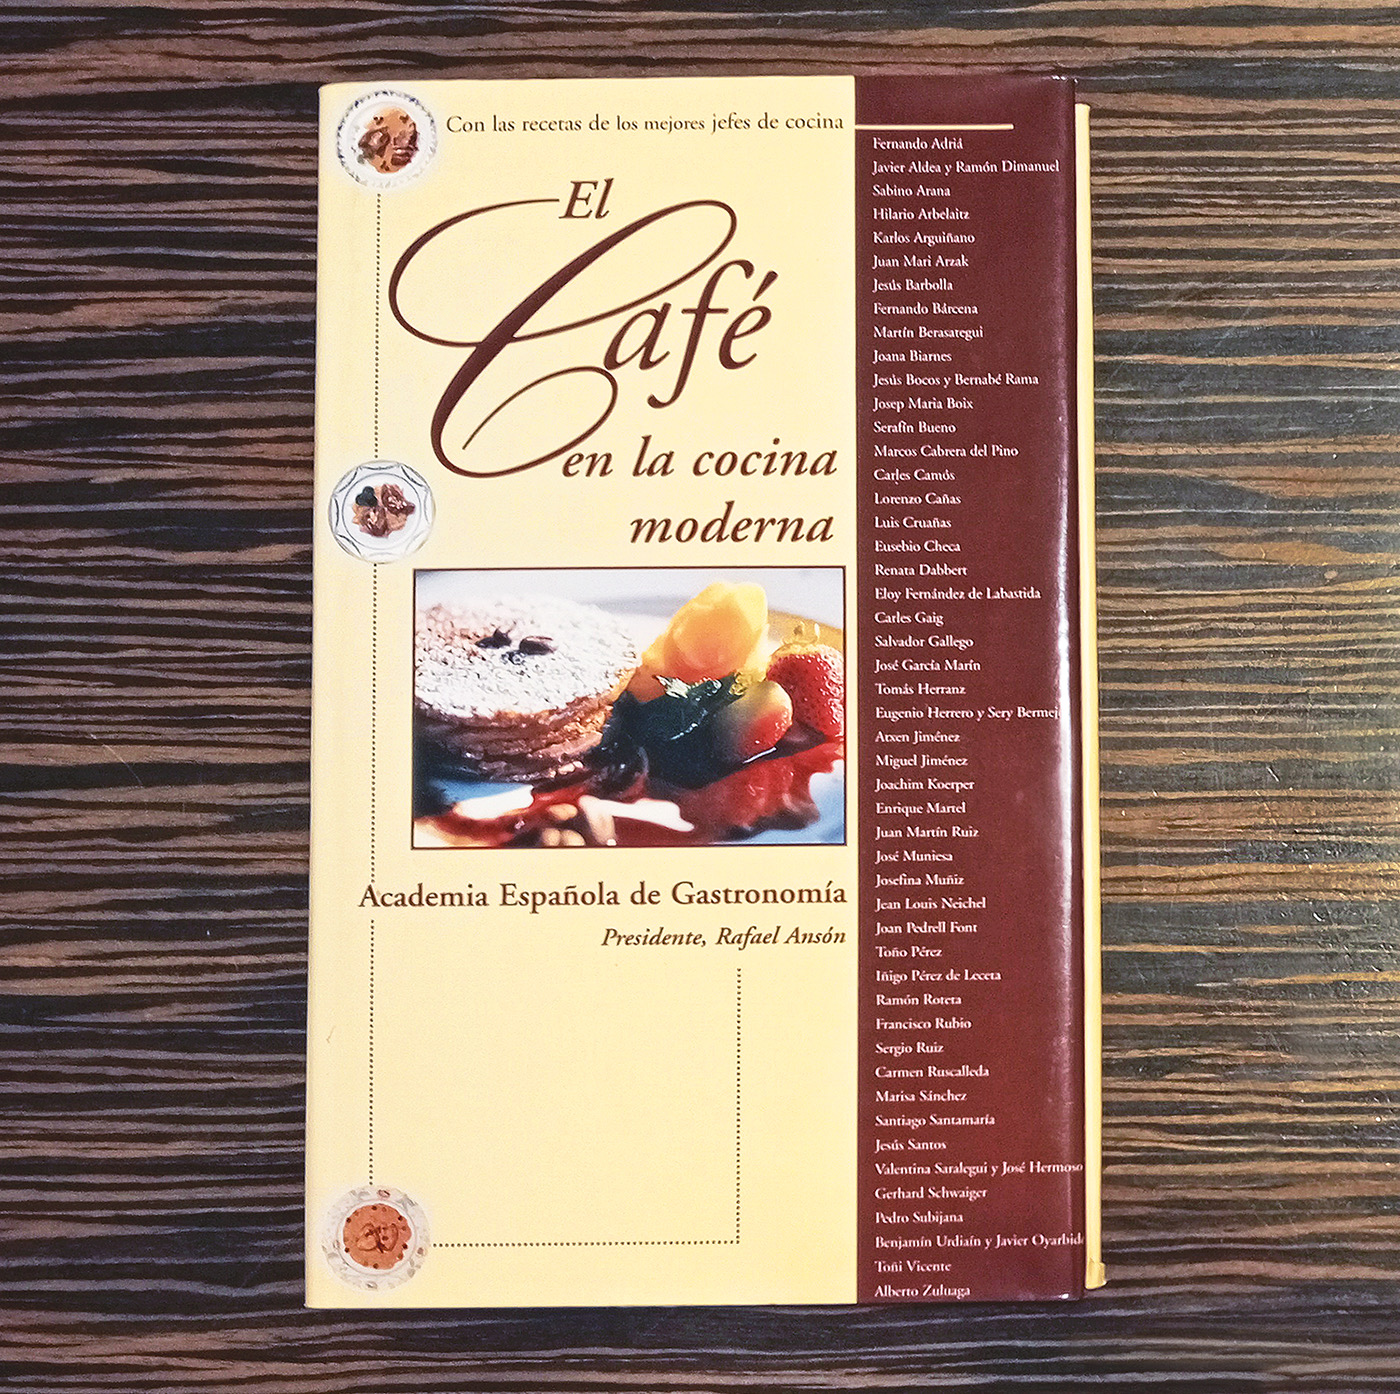 Portada del libro “El Café en la Cocina Moderna”. (Foto: Rafael Ansón)